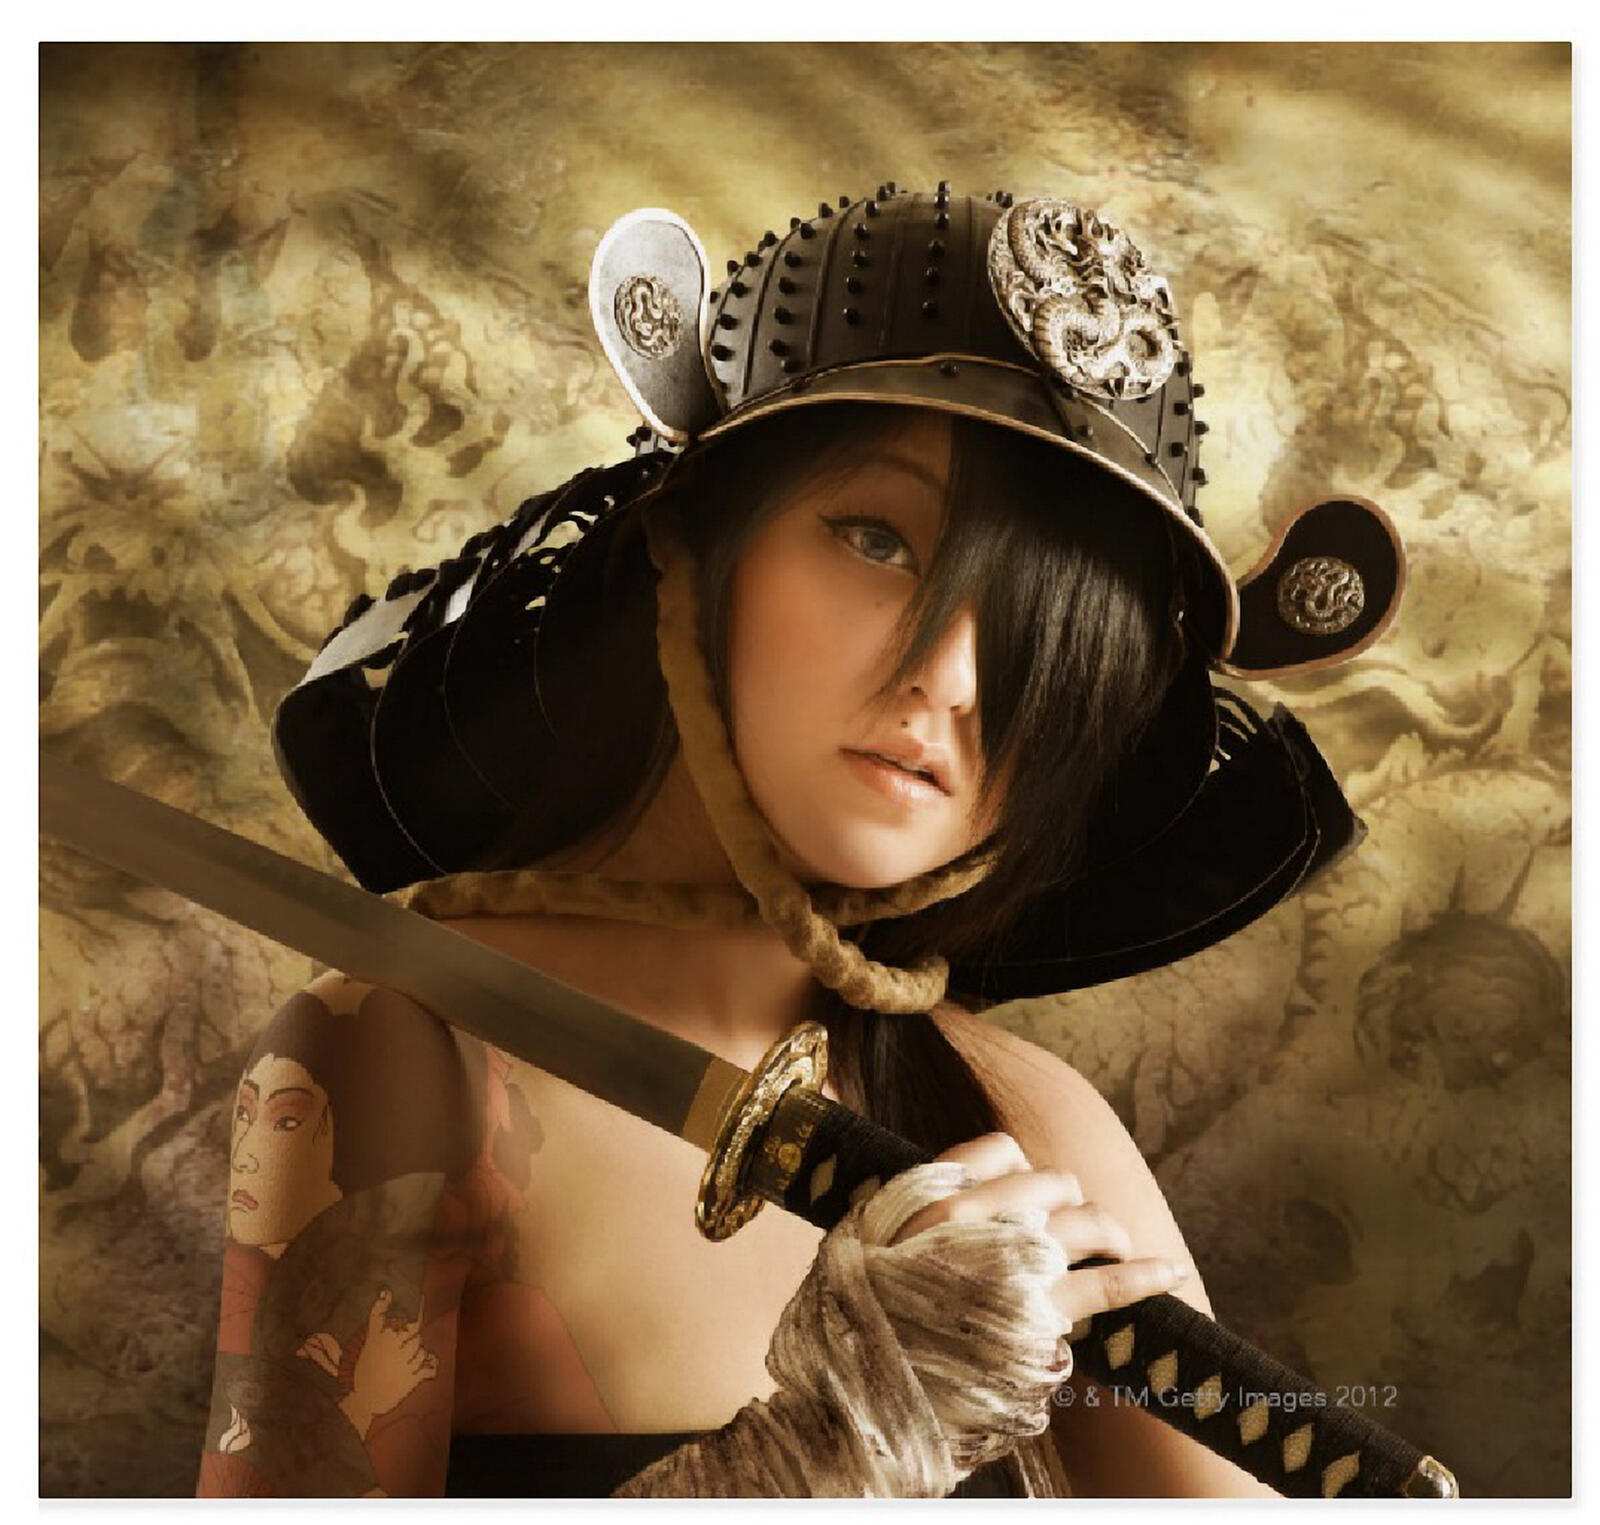 Wallpapers kabuto helmet girl with sword girls on the desktop